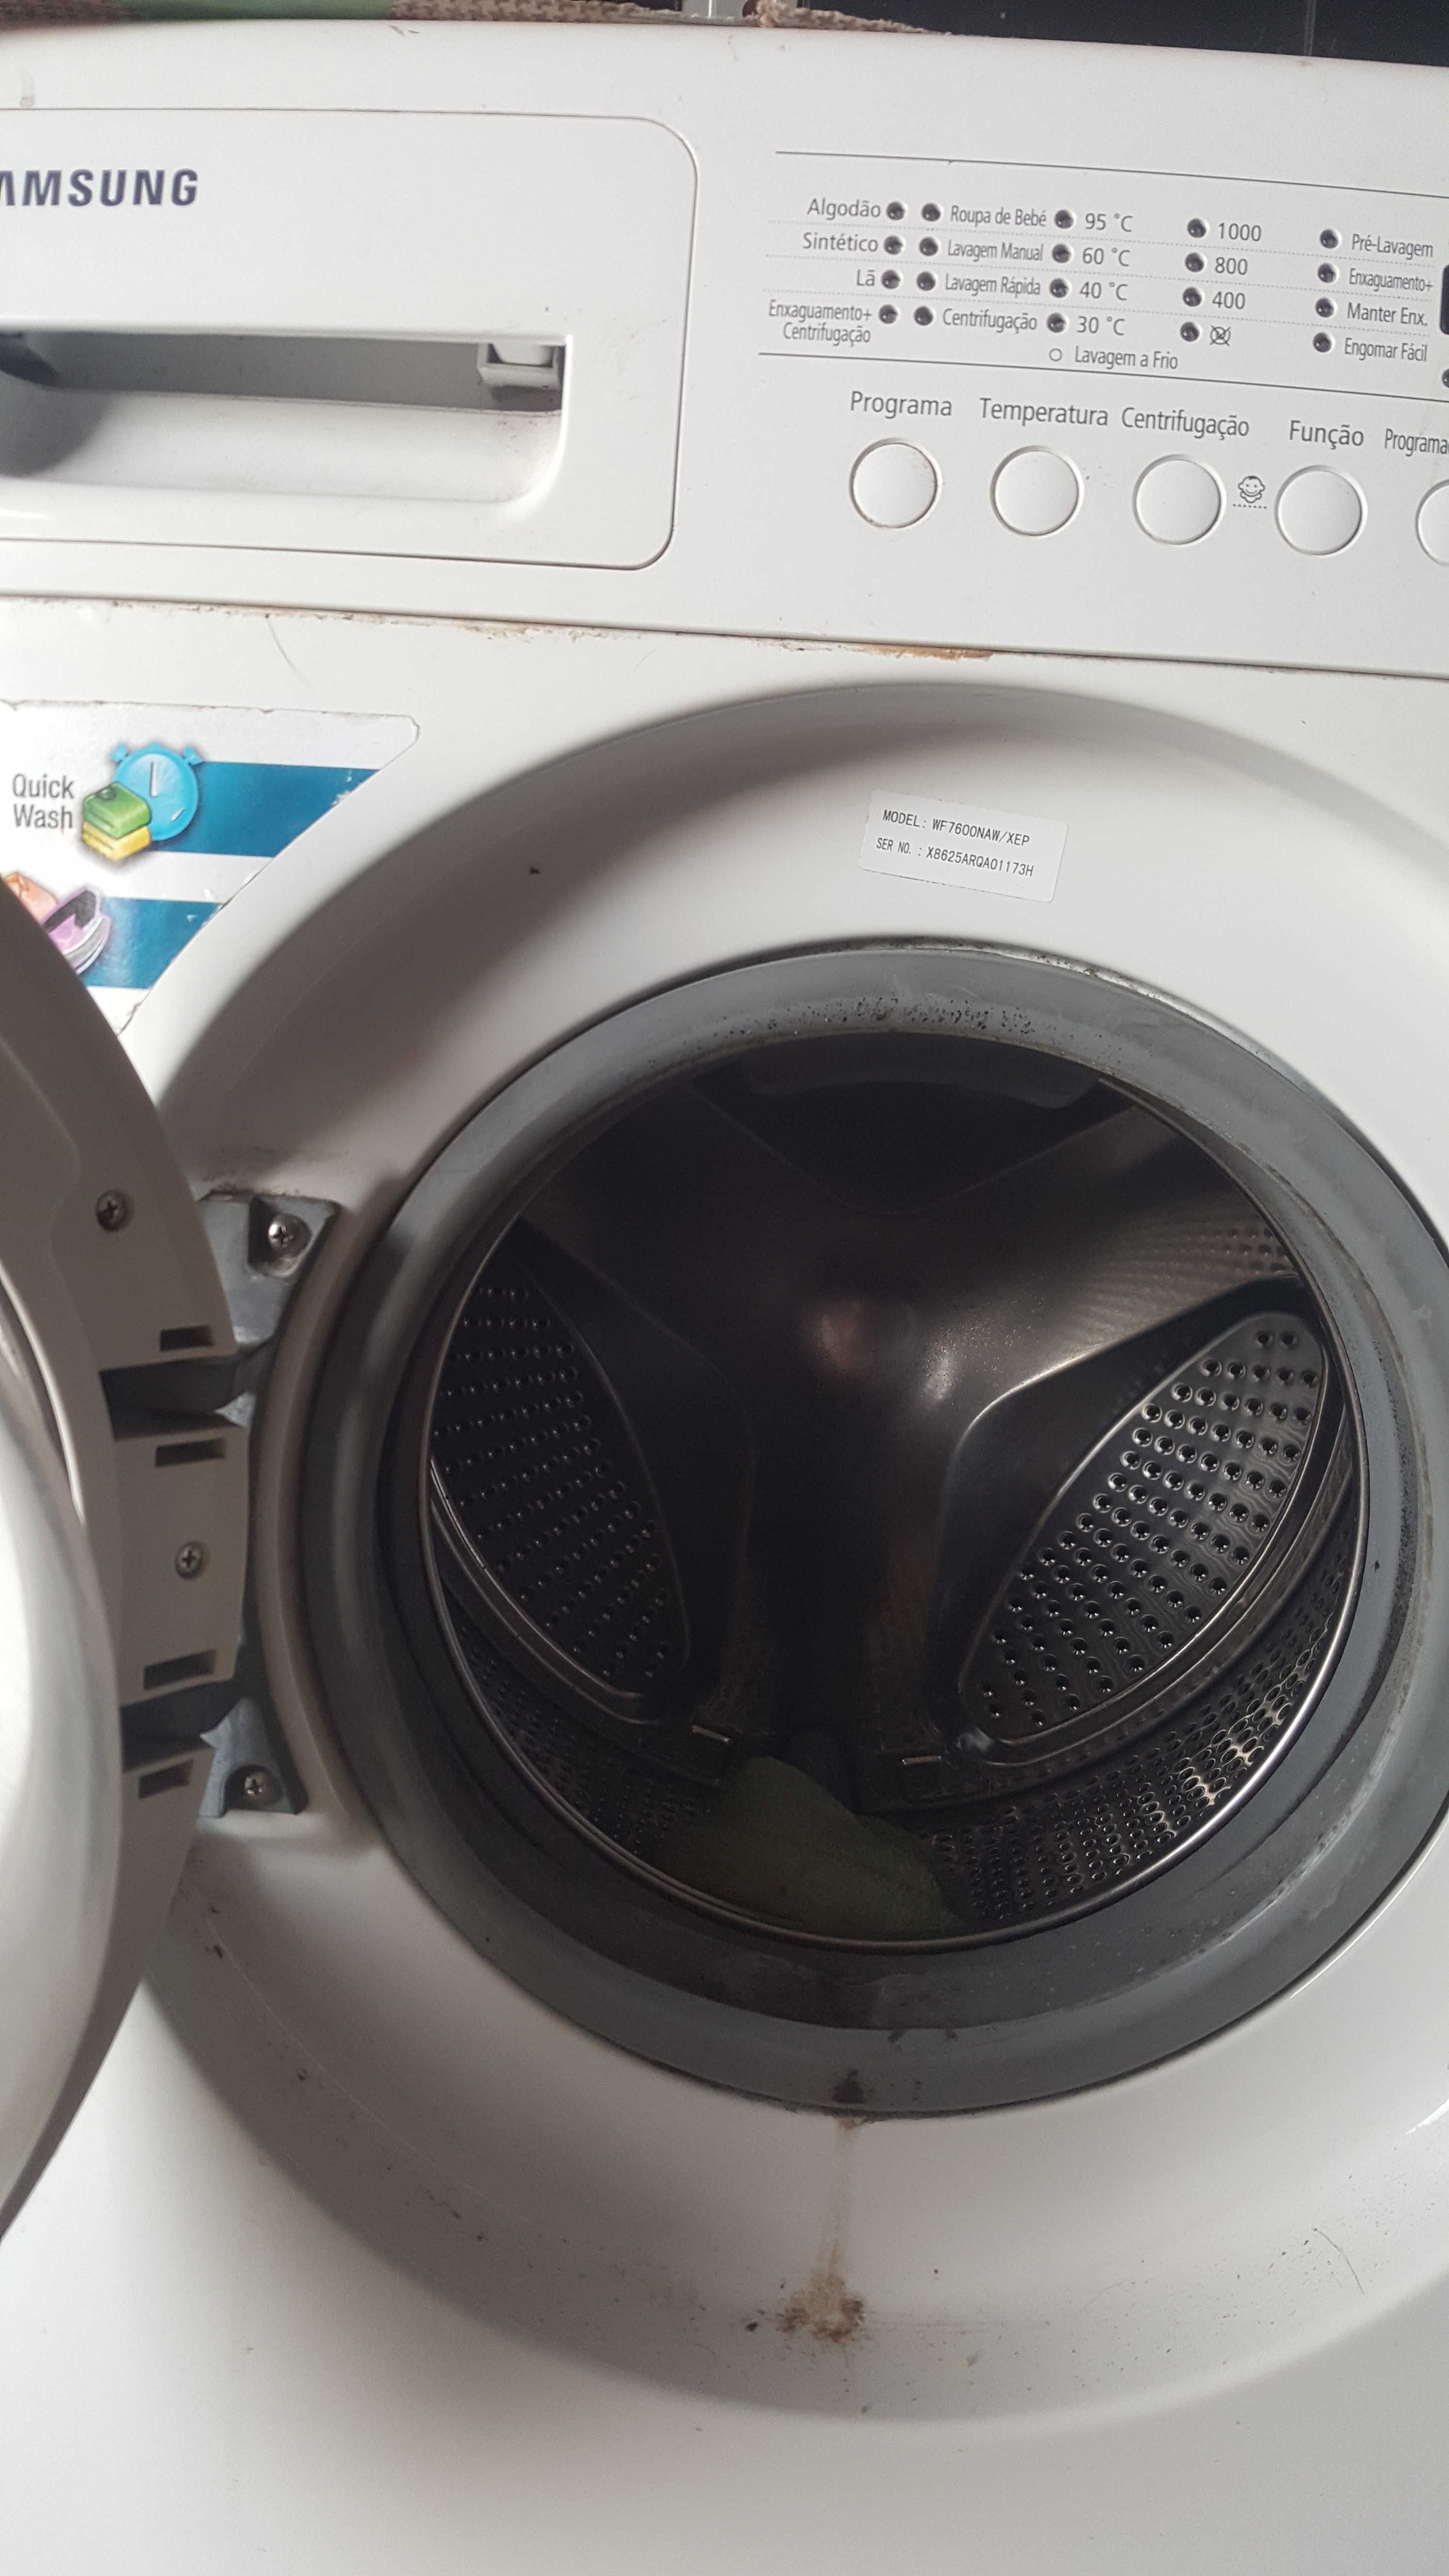 Máquina de lavar usada